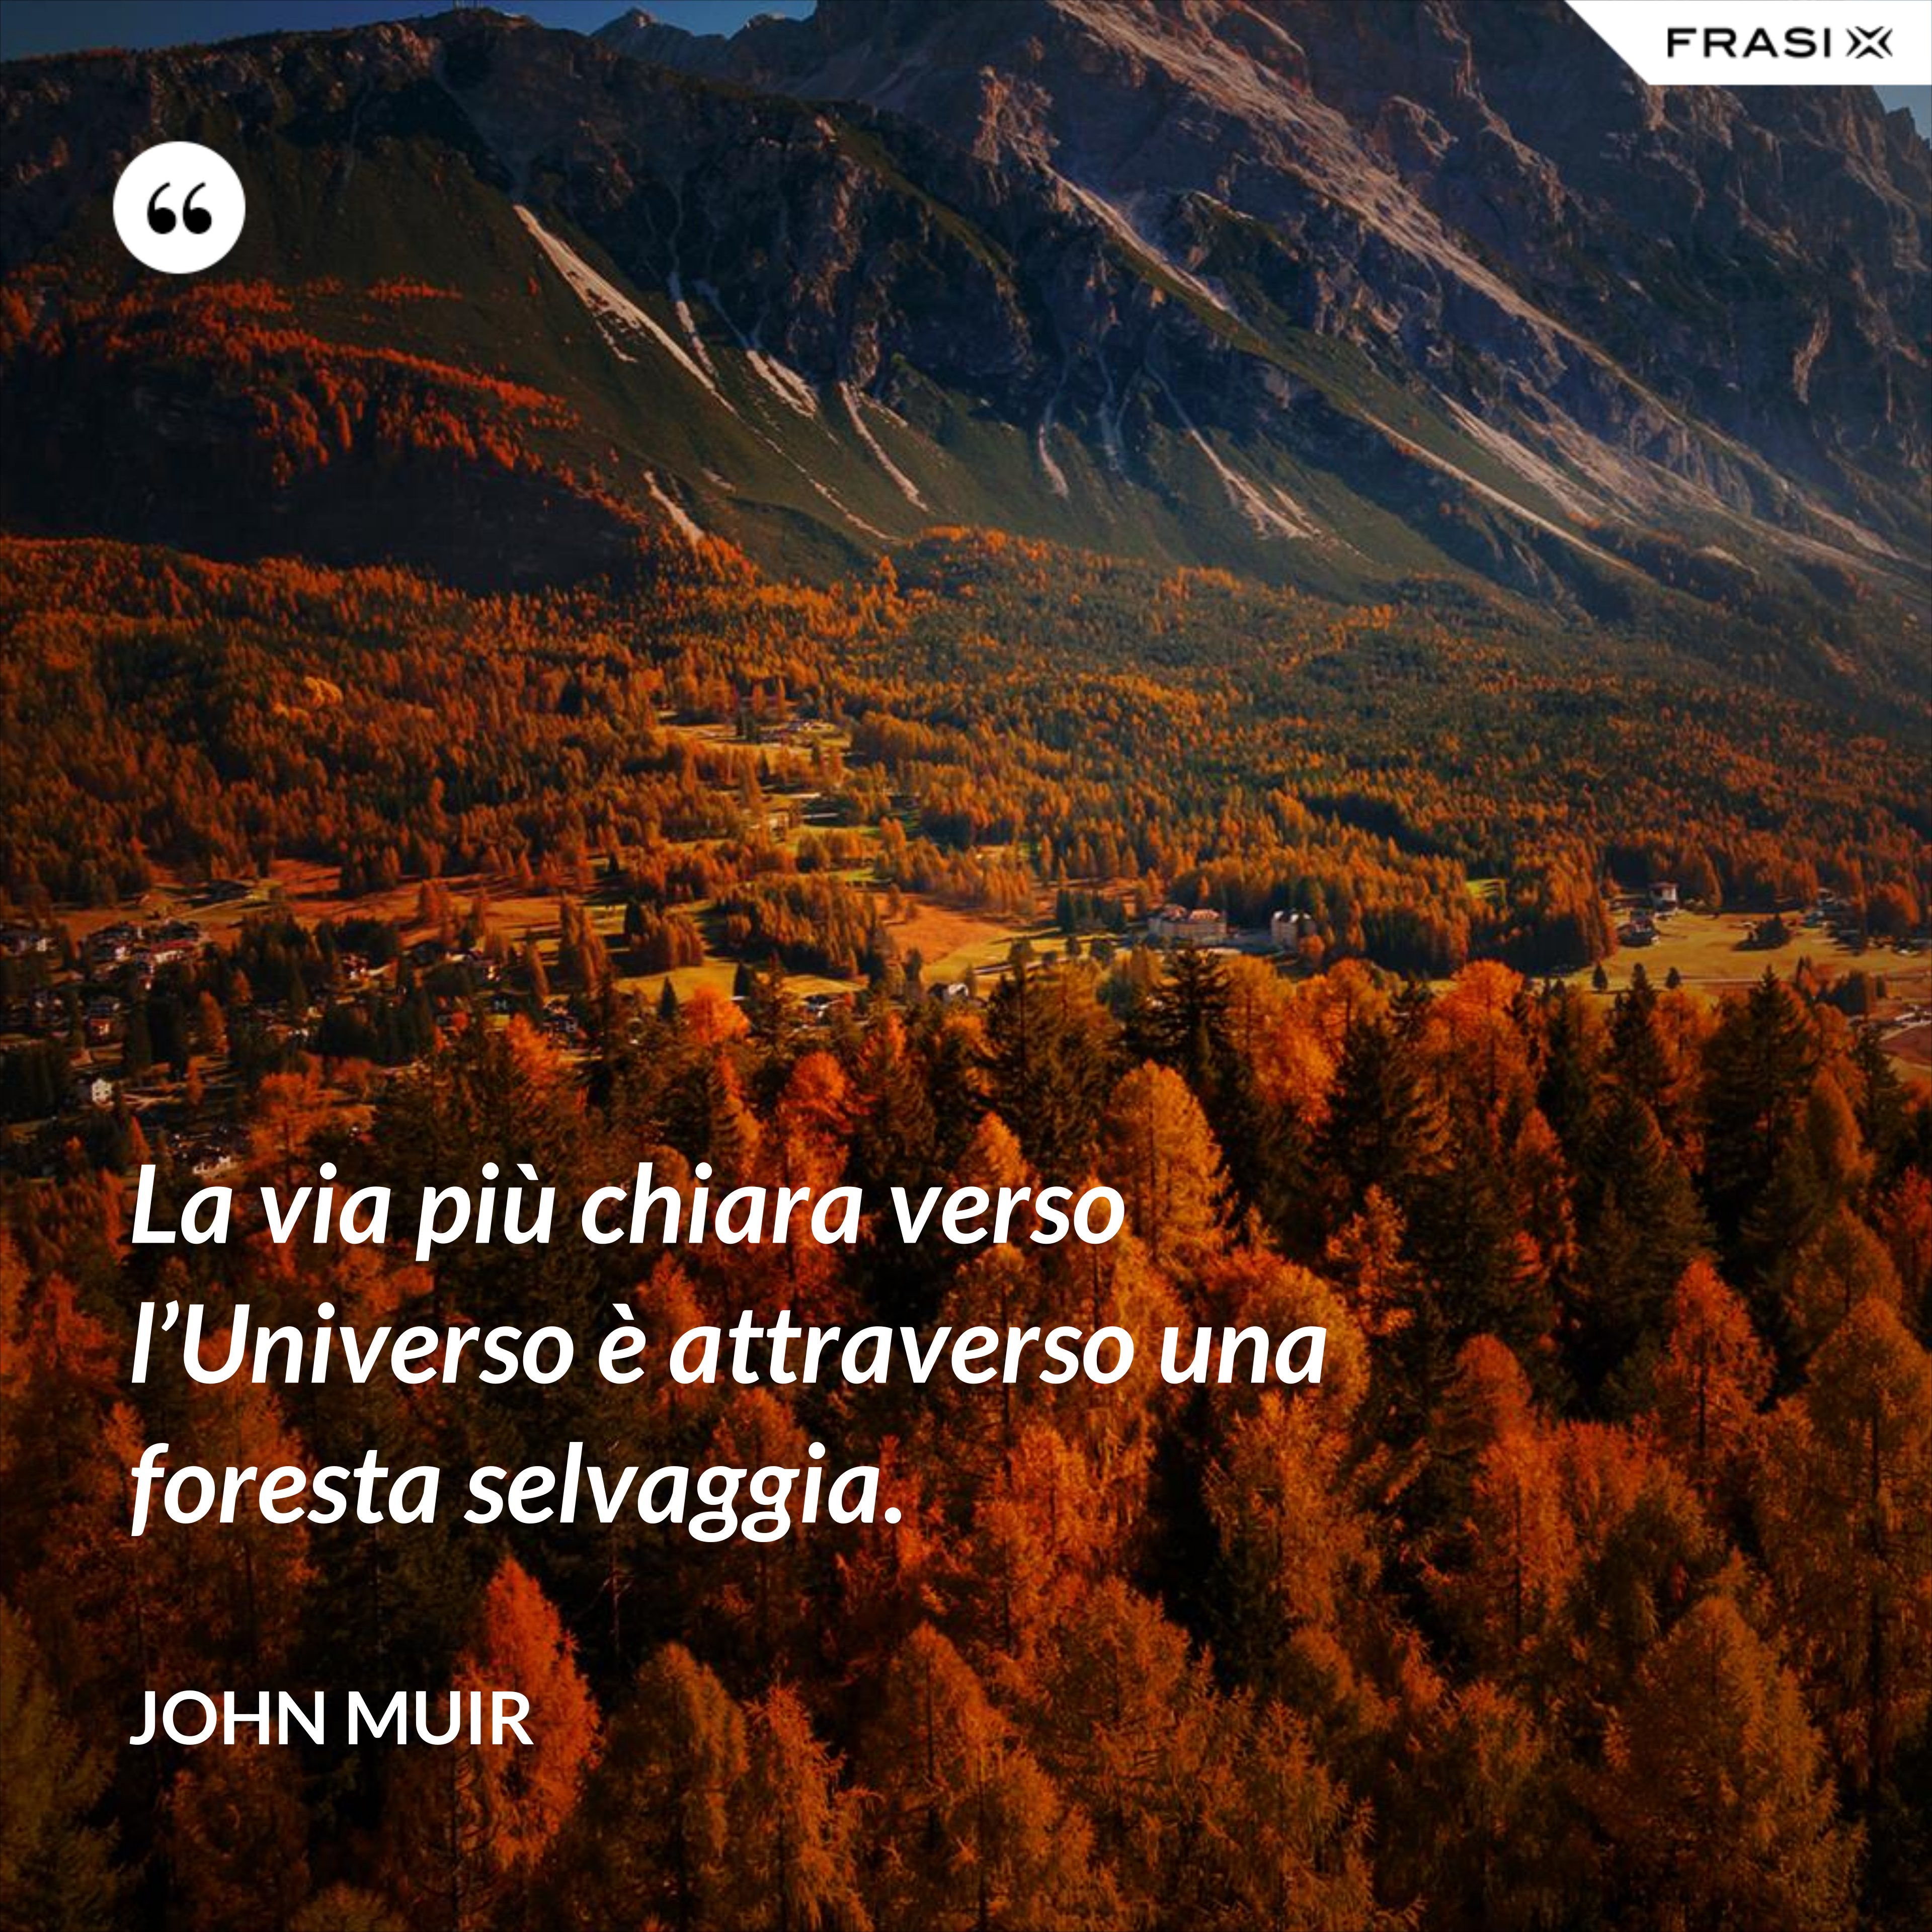 La via più chiara verso l’Universo è attraverso una foresta selvaggia. - John Muir